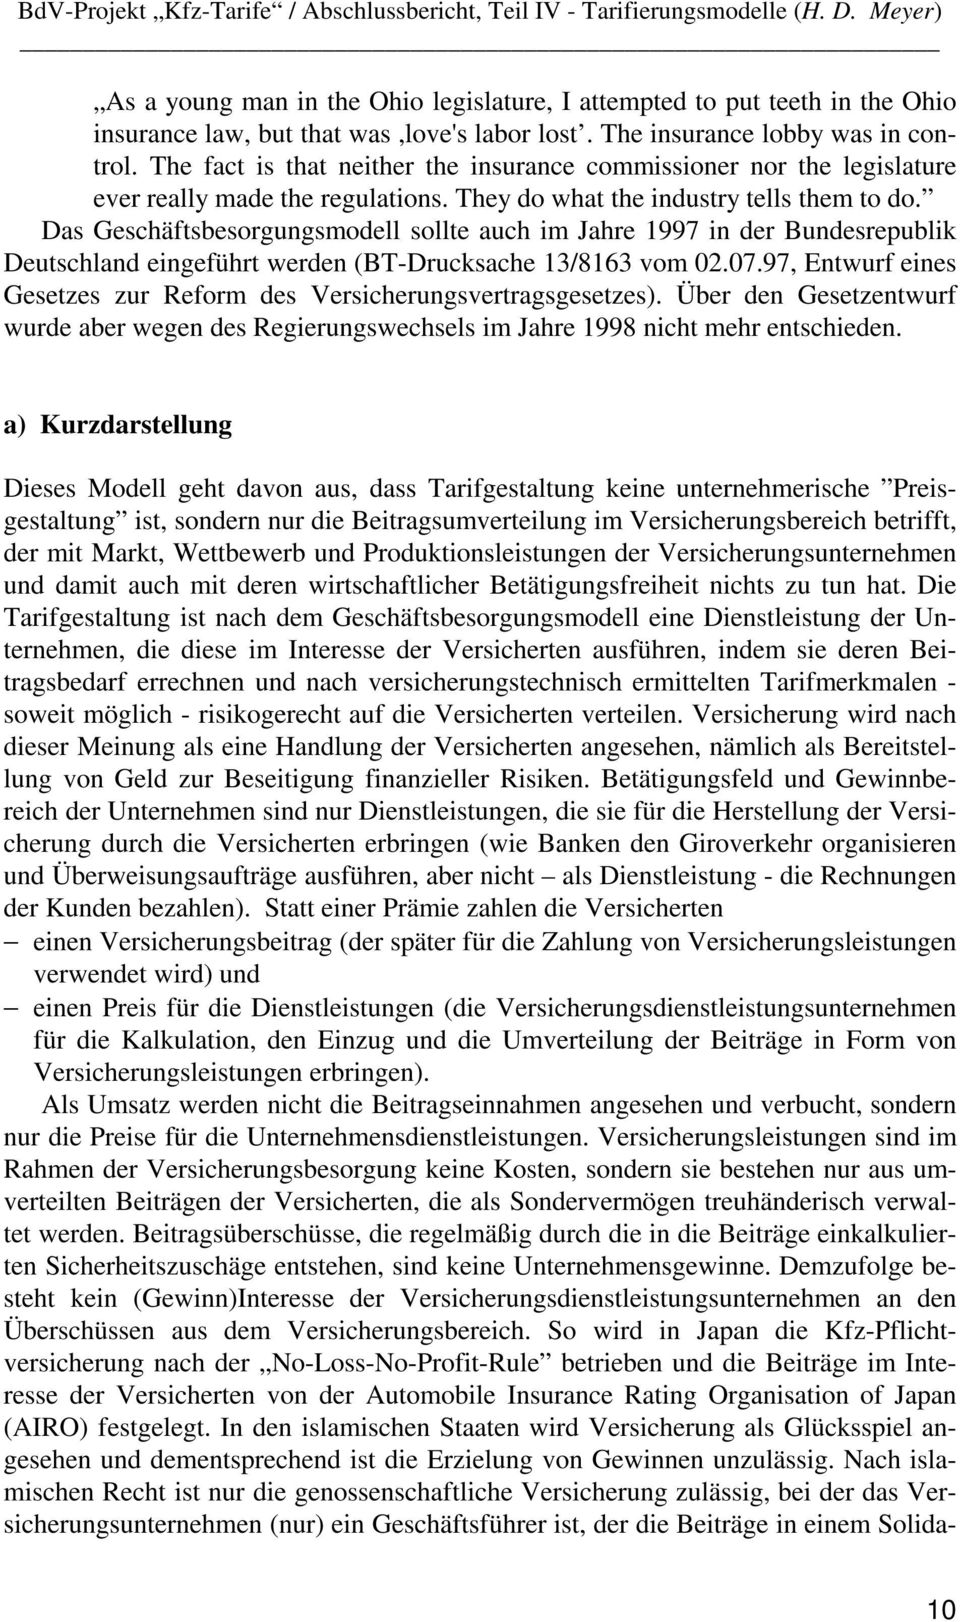 Das Geschäftsbesorgungsmodell sollte auch im Jahre 1997 in der Bundesrepublik Deutschland eingeführt werden (BT-Drucksache 13/8163 vom 02.07.